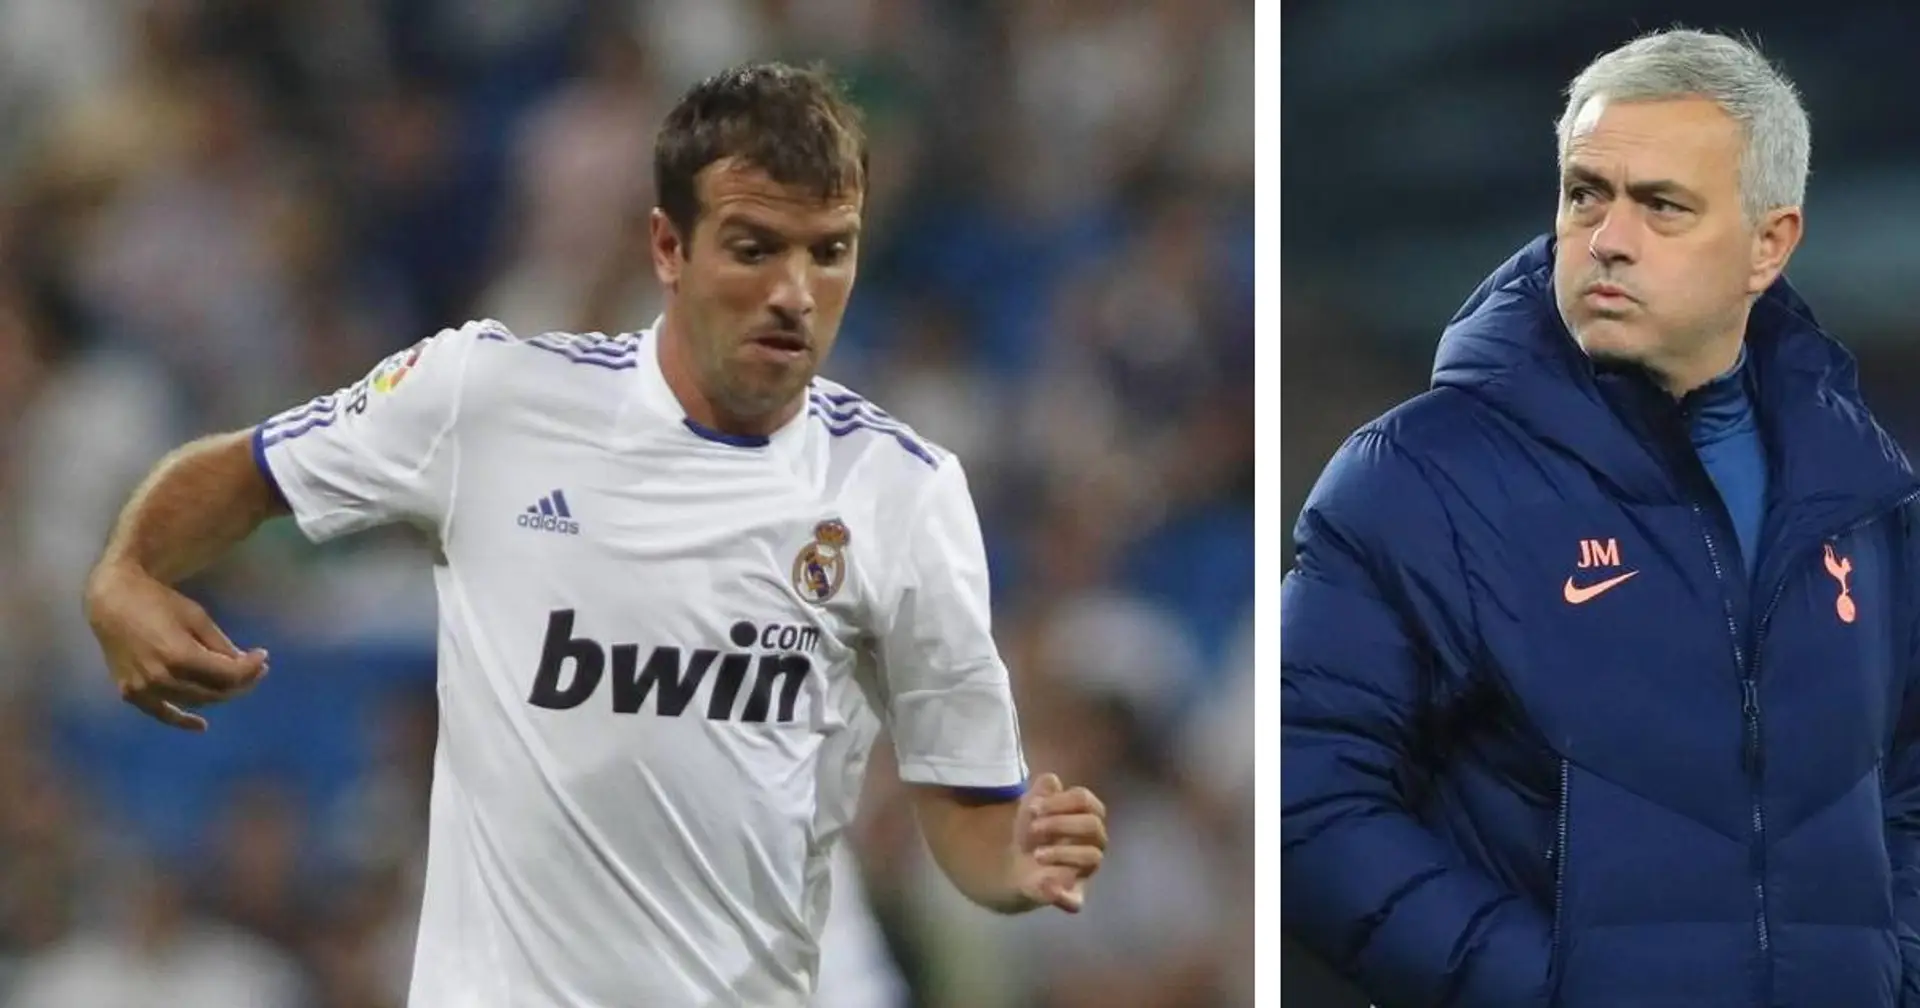 "Jose, vous avez mon numéro" : Van der Vaart appelle à faire une réunion complète des joueurs du Real Madrid à Tottenham